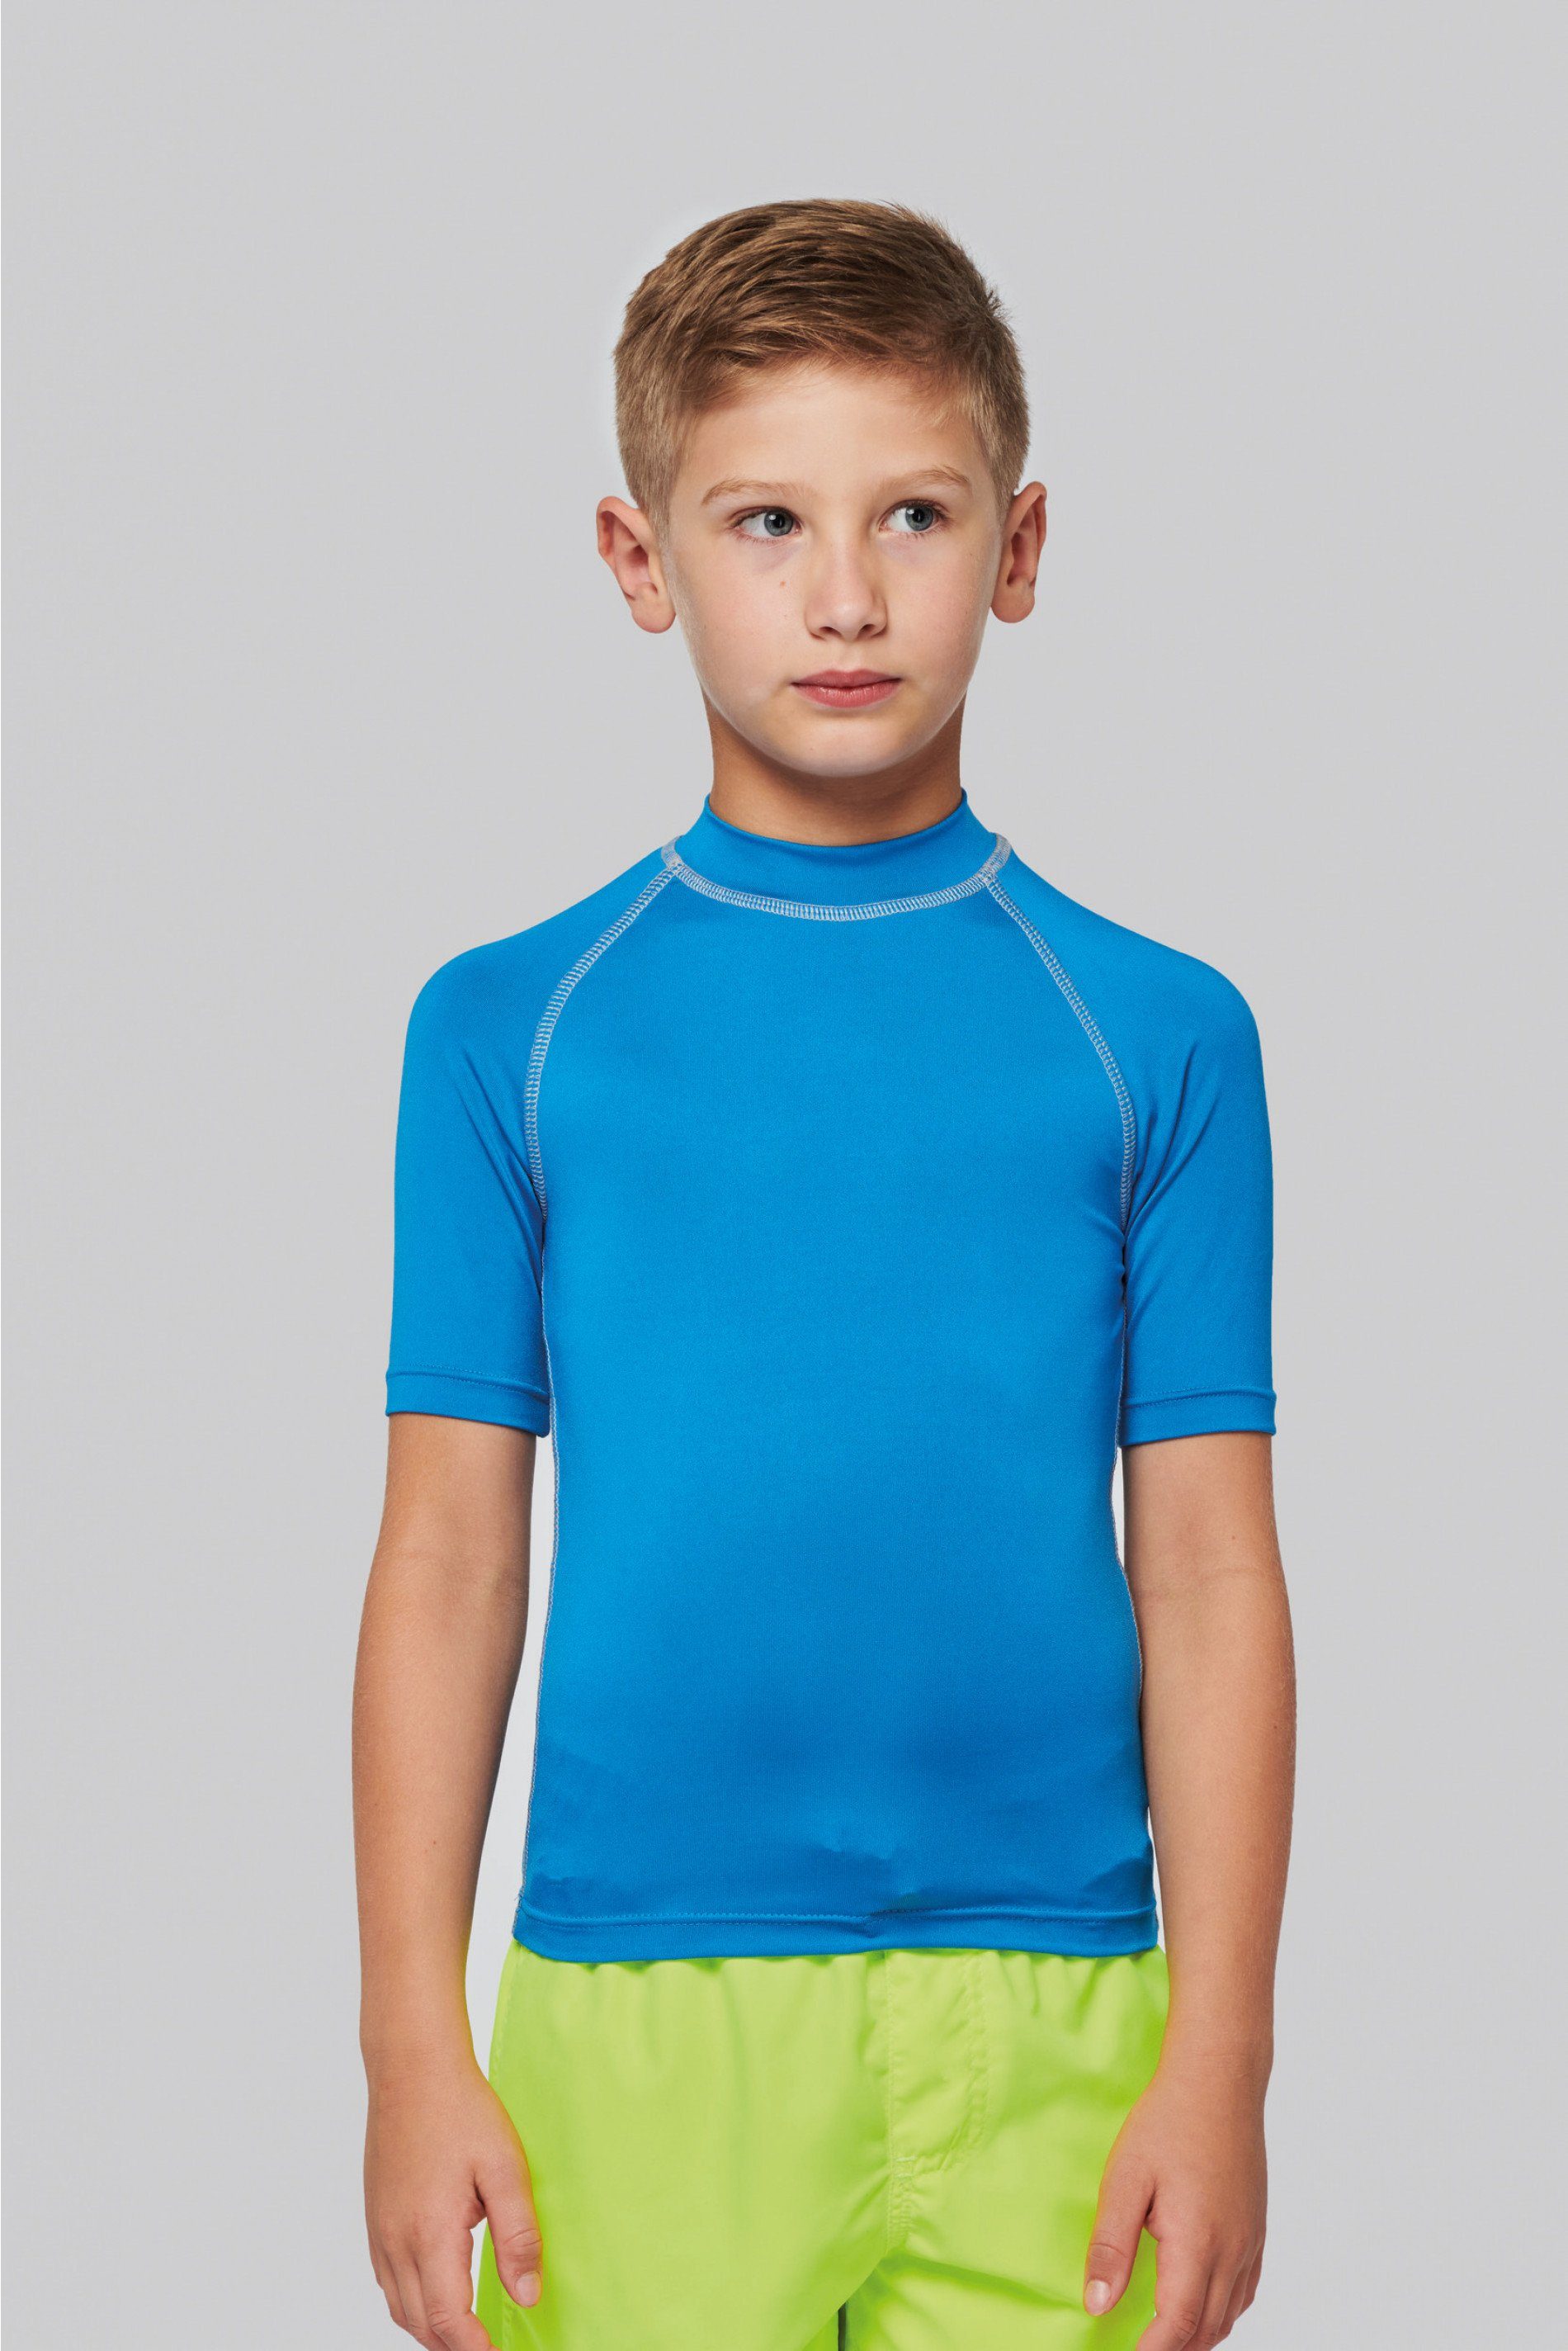 coole-fun-t-shirts Strandshirt Bade T-Shirt zum Schwimmen Kinder Surfshirt  Jumngen und Mädchen UV 40+ blau, dunkelblau und neongelb Gr. 6 7 8 9 10 11  12 13 14 Jahre